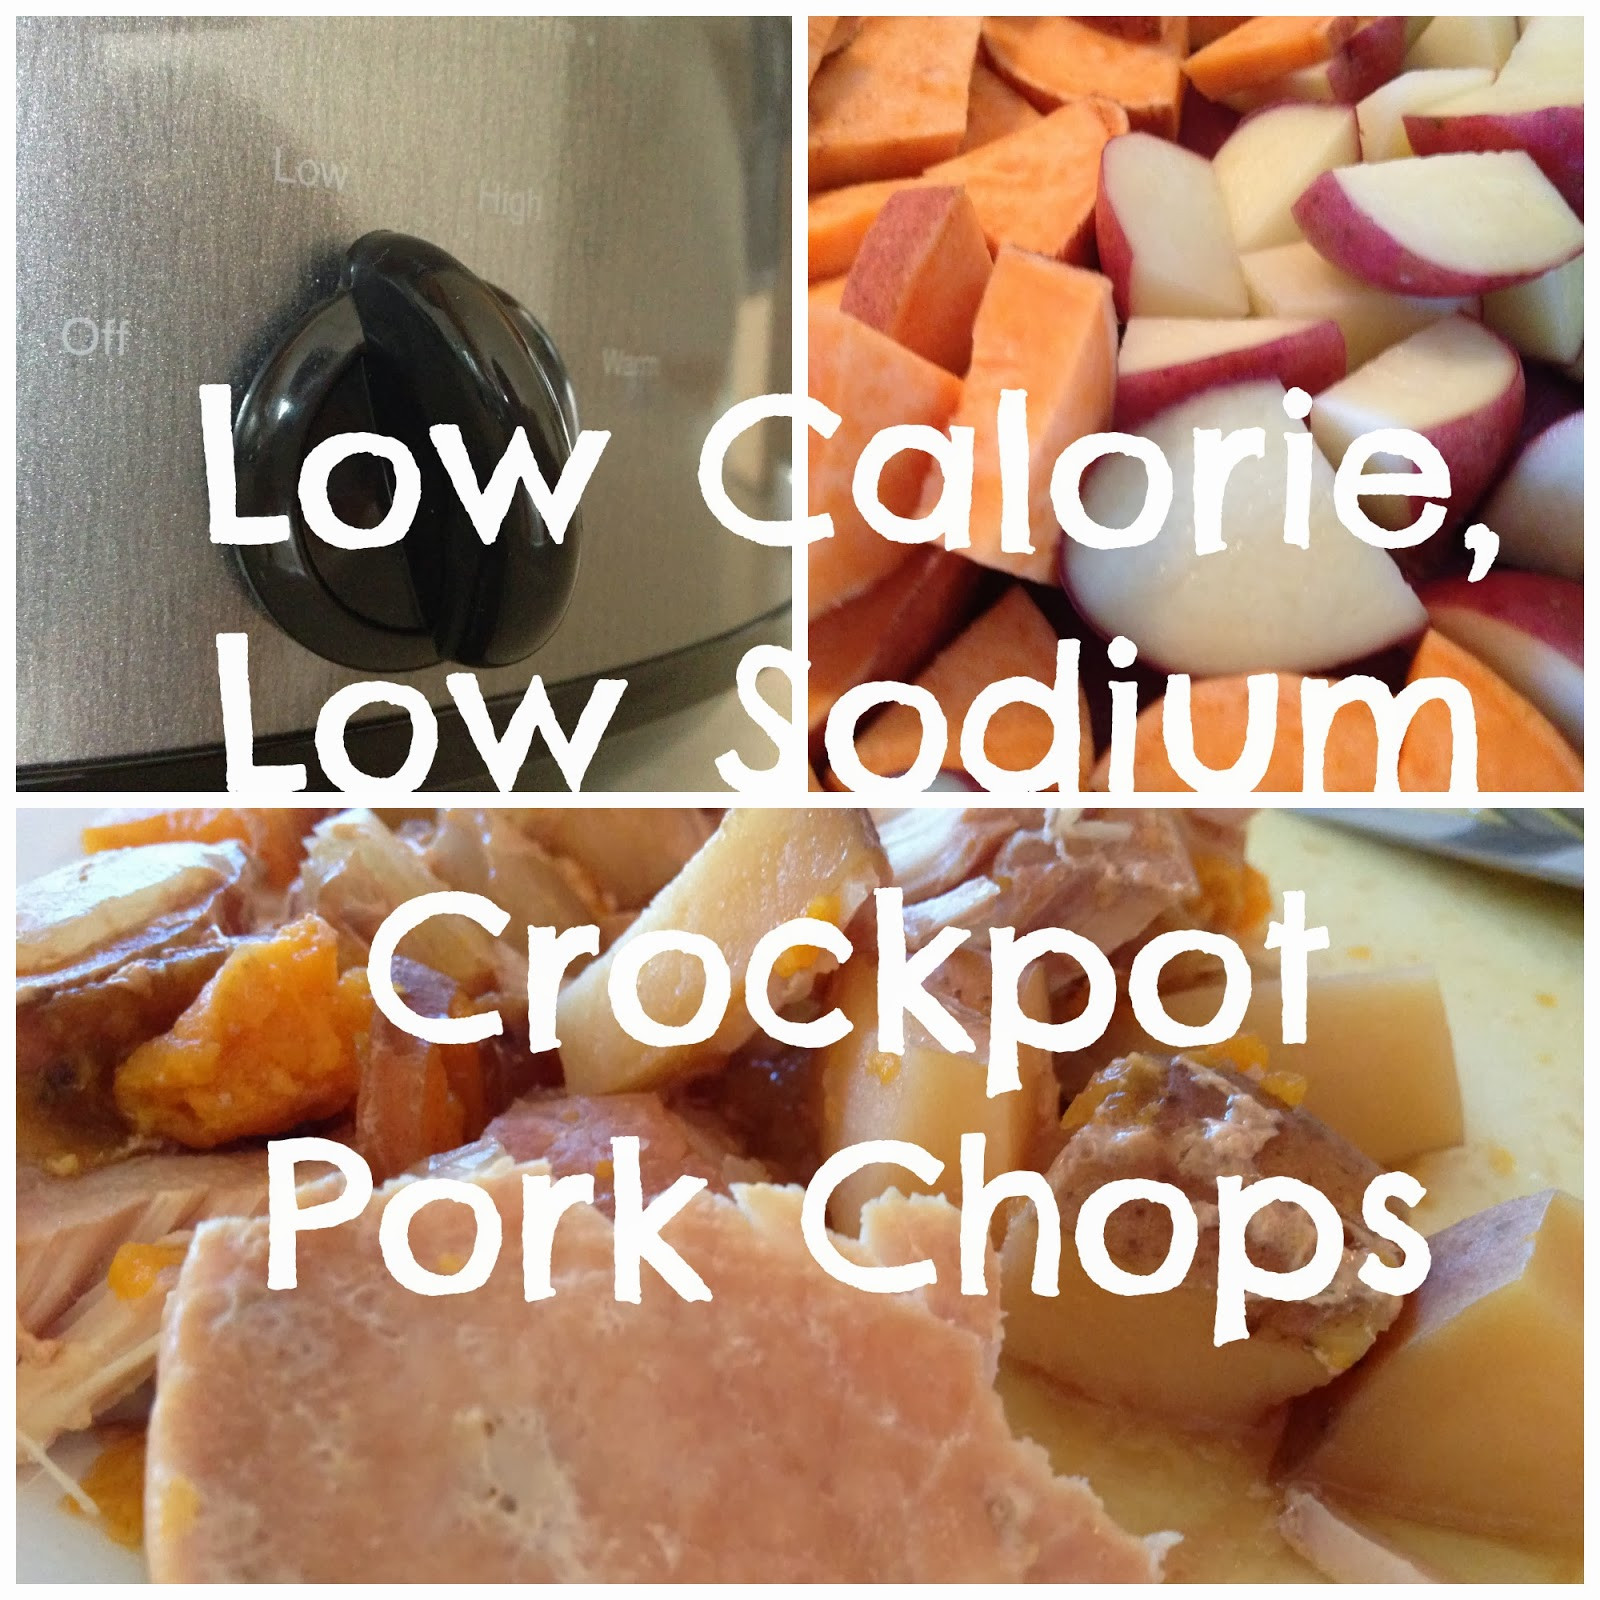 Low Calorie Pork Chops
 The Simple Life Low Calorie Crockpot Pork Chops